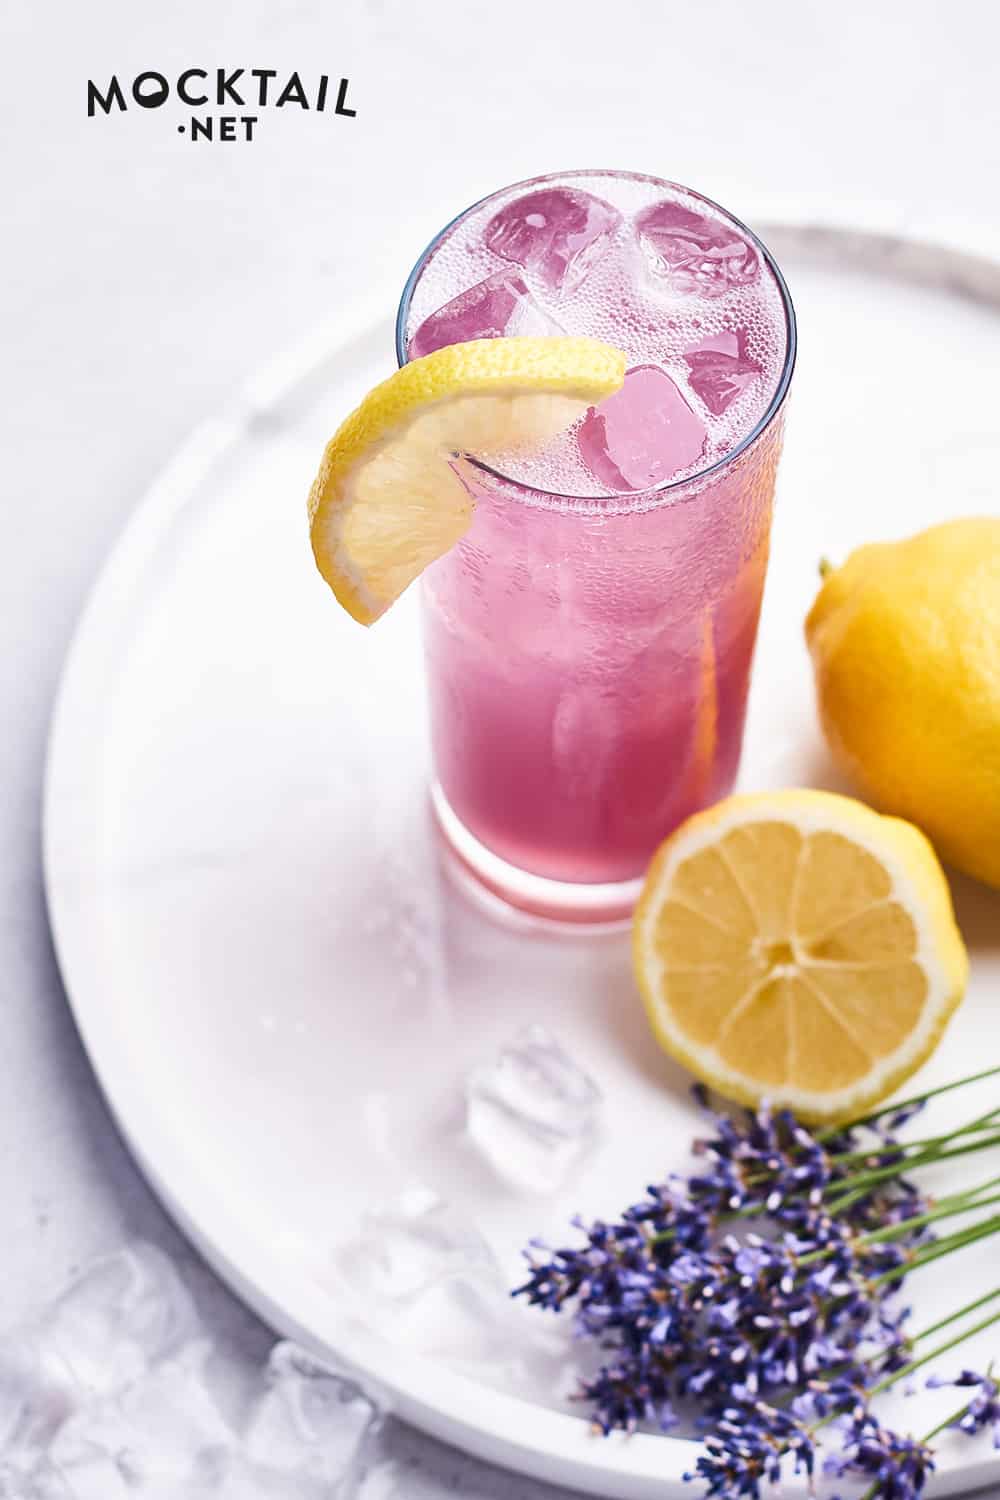 What is lavender lemonade good for?